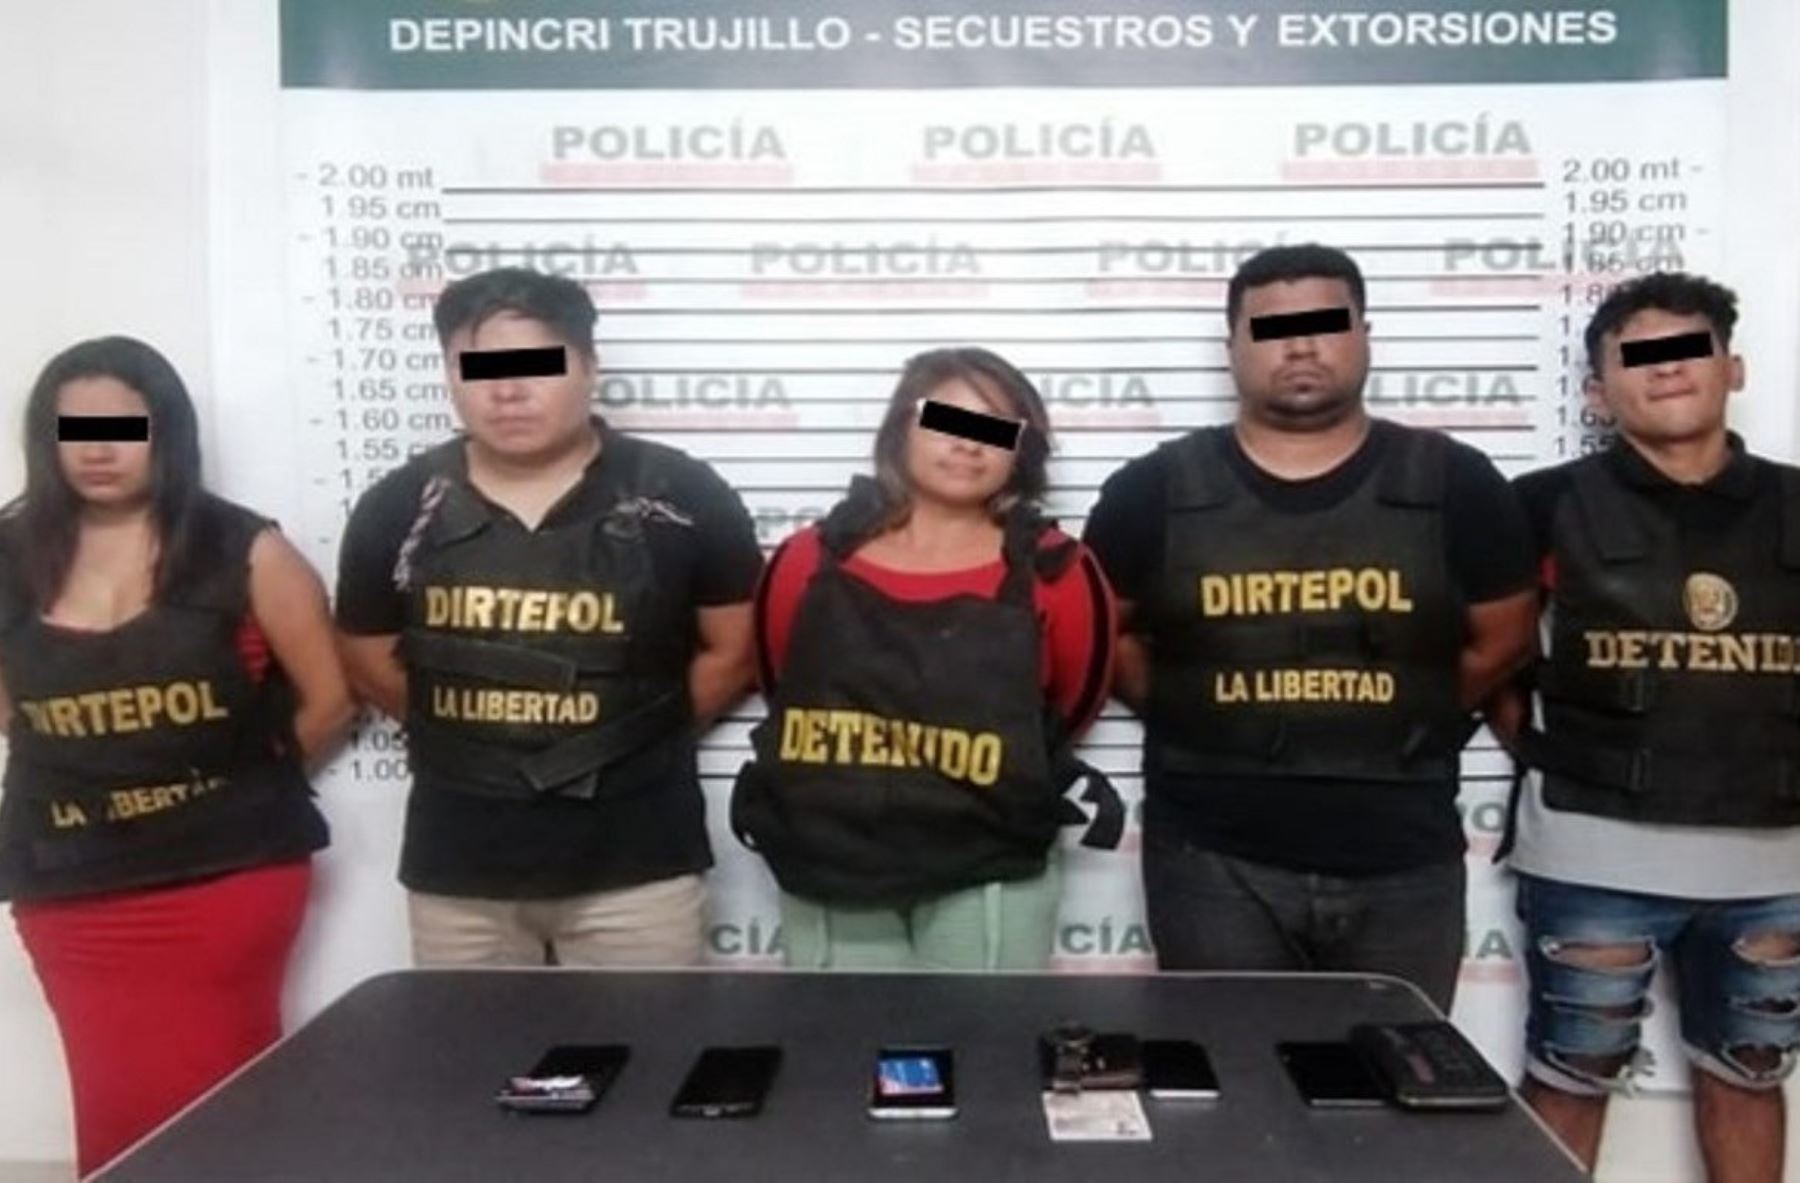 La banda criminal los Buitres de Palermo cometió delitos de extorsión y de cobro de cupos en Trujillo.